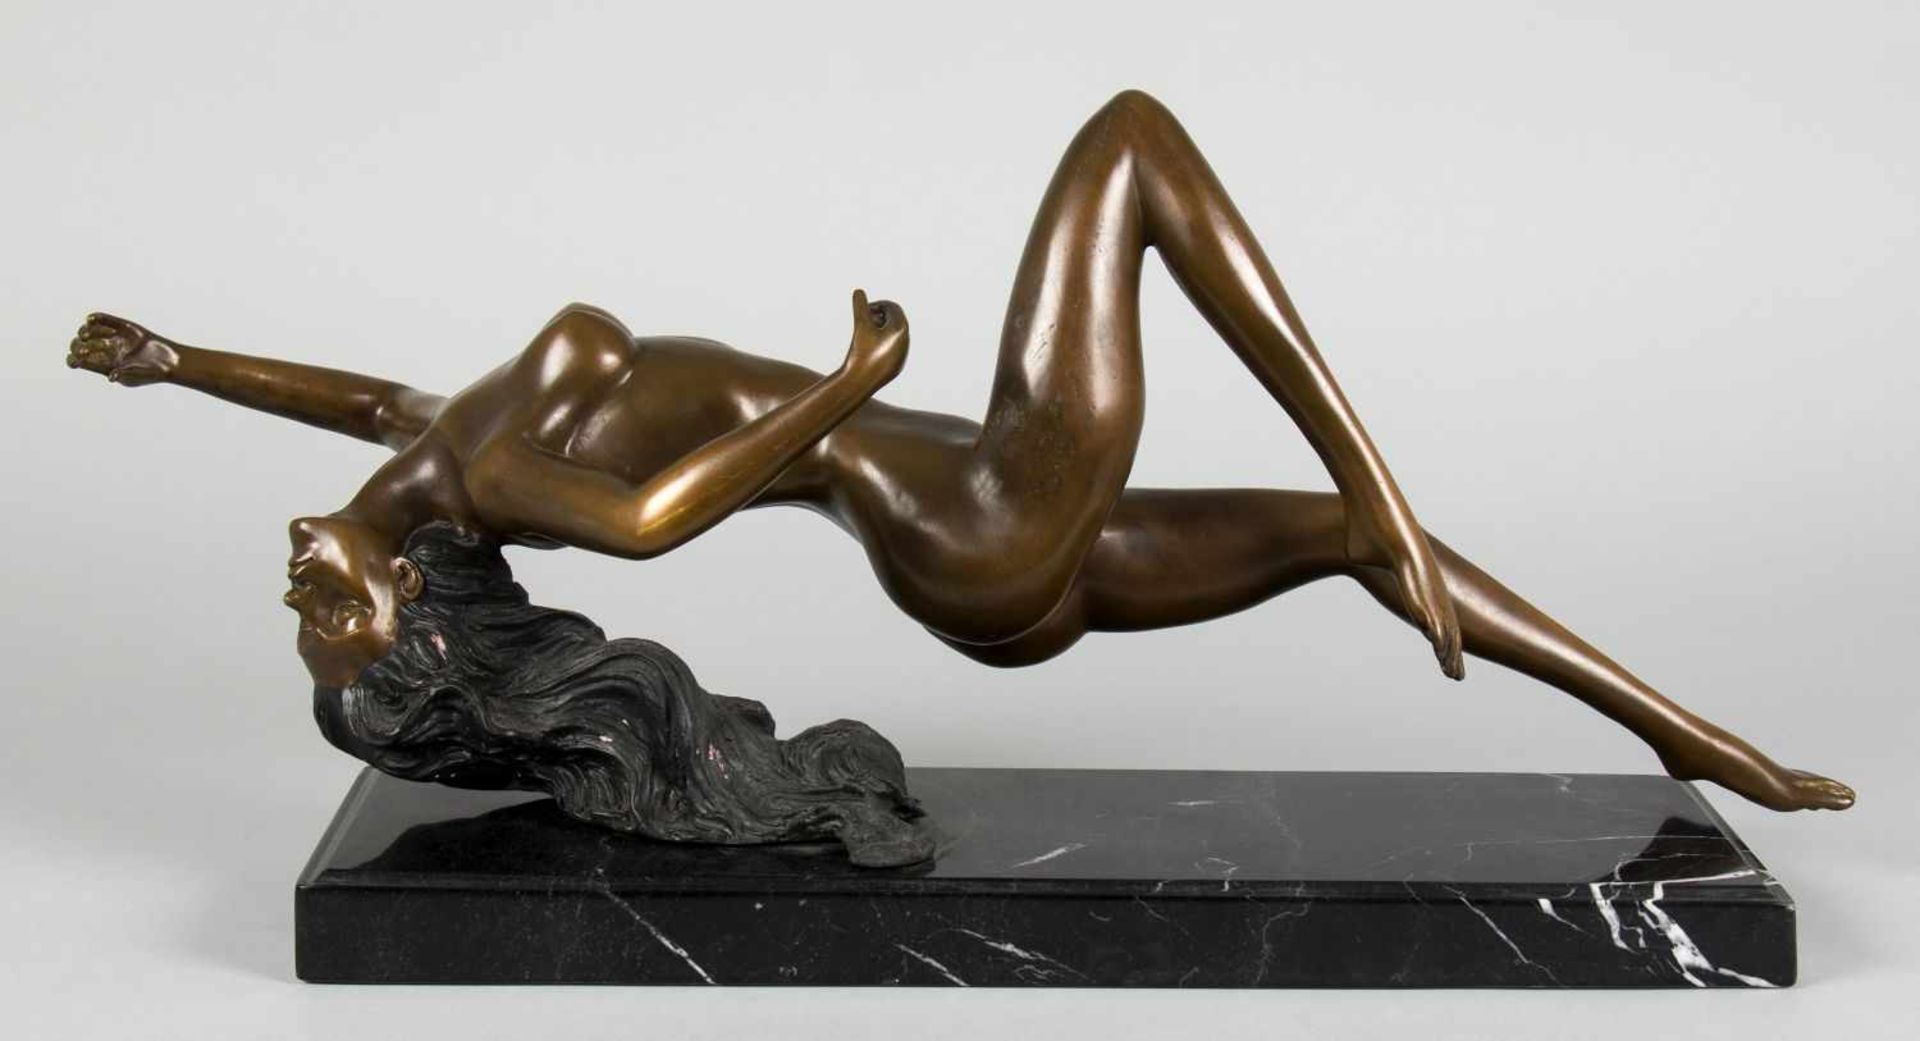 Unbekannt, 20. Jh.Liegender weiblicher Akt. Bronze, braun und schwarz patiniert. L. 59 cm. Auf